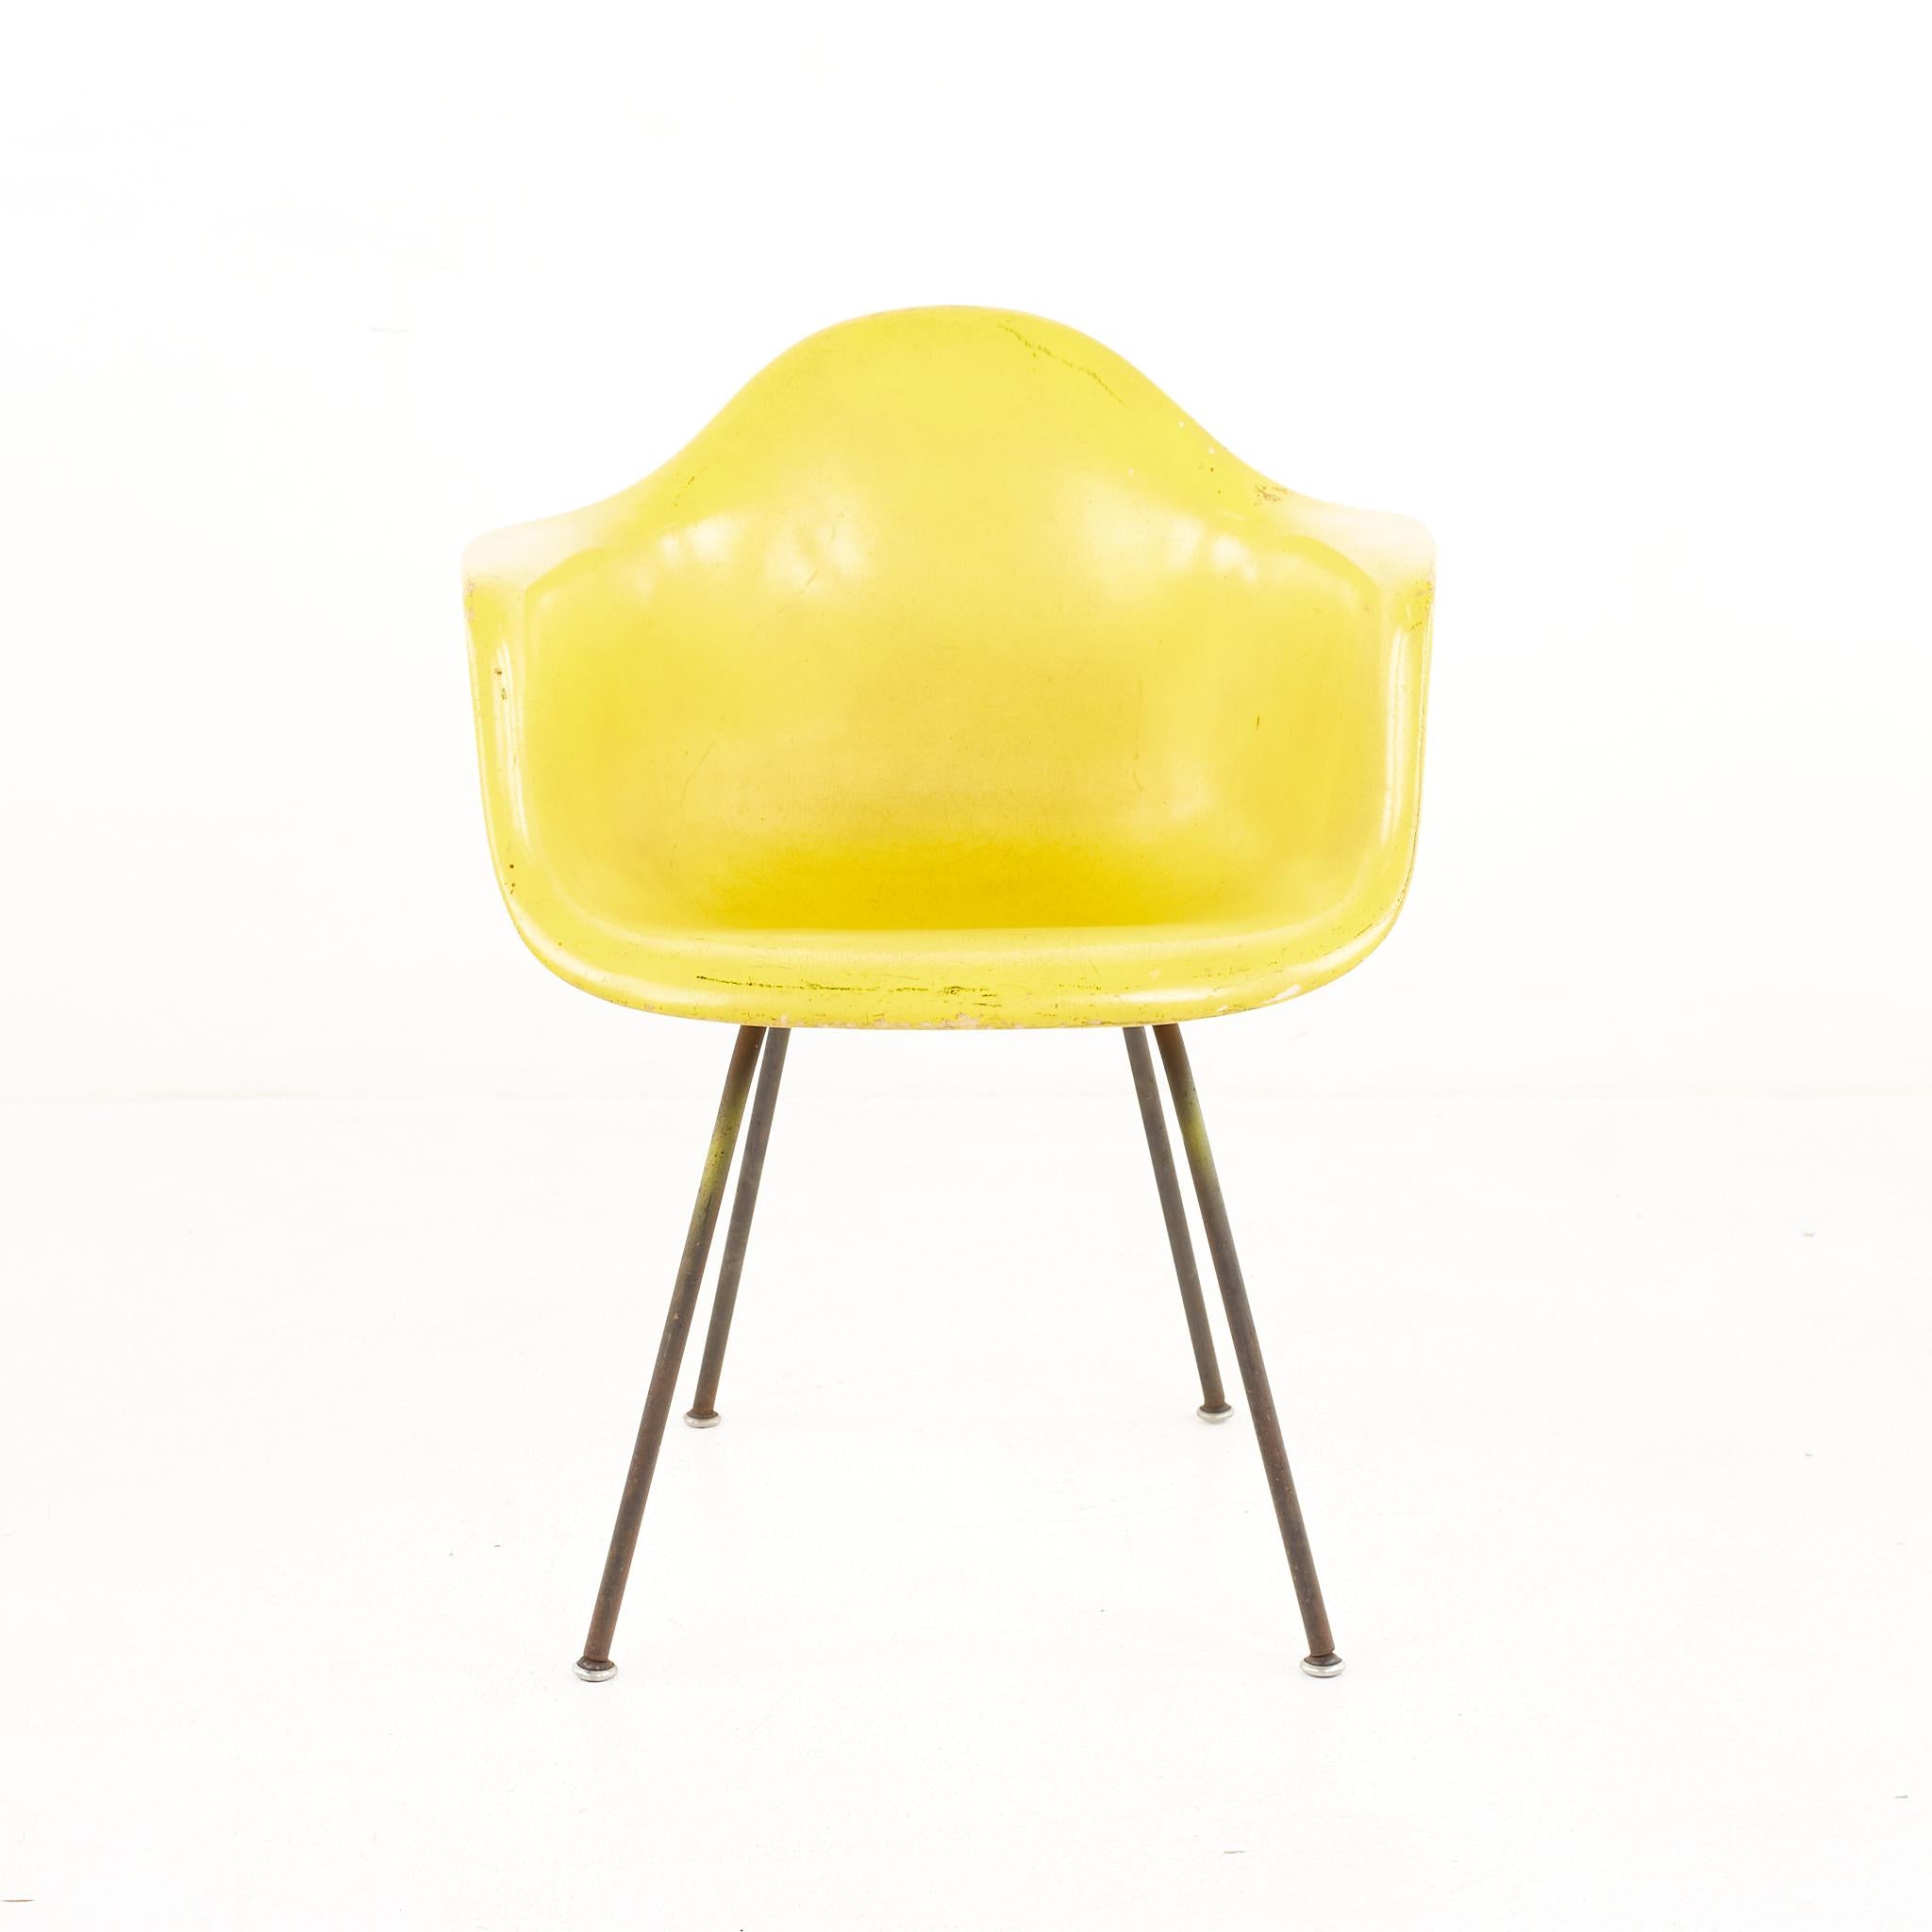 Chaise Eames For Herman Miller Mid Century Yellow Fiberglass Shell Chair

La chaise mesure : 24.75 de large x 22 de profond x 31,25 de haut, avec une hauteur d'assise de 18 pouces et une hauteur d'accoudoir de 26 pouces 

Tous les meubles